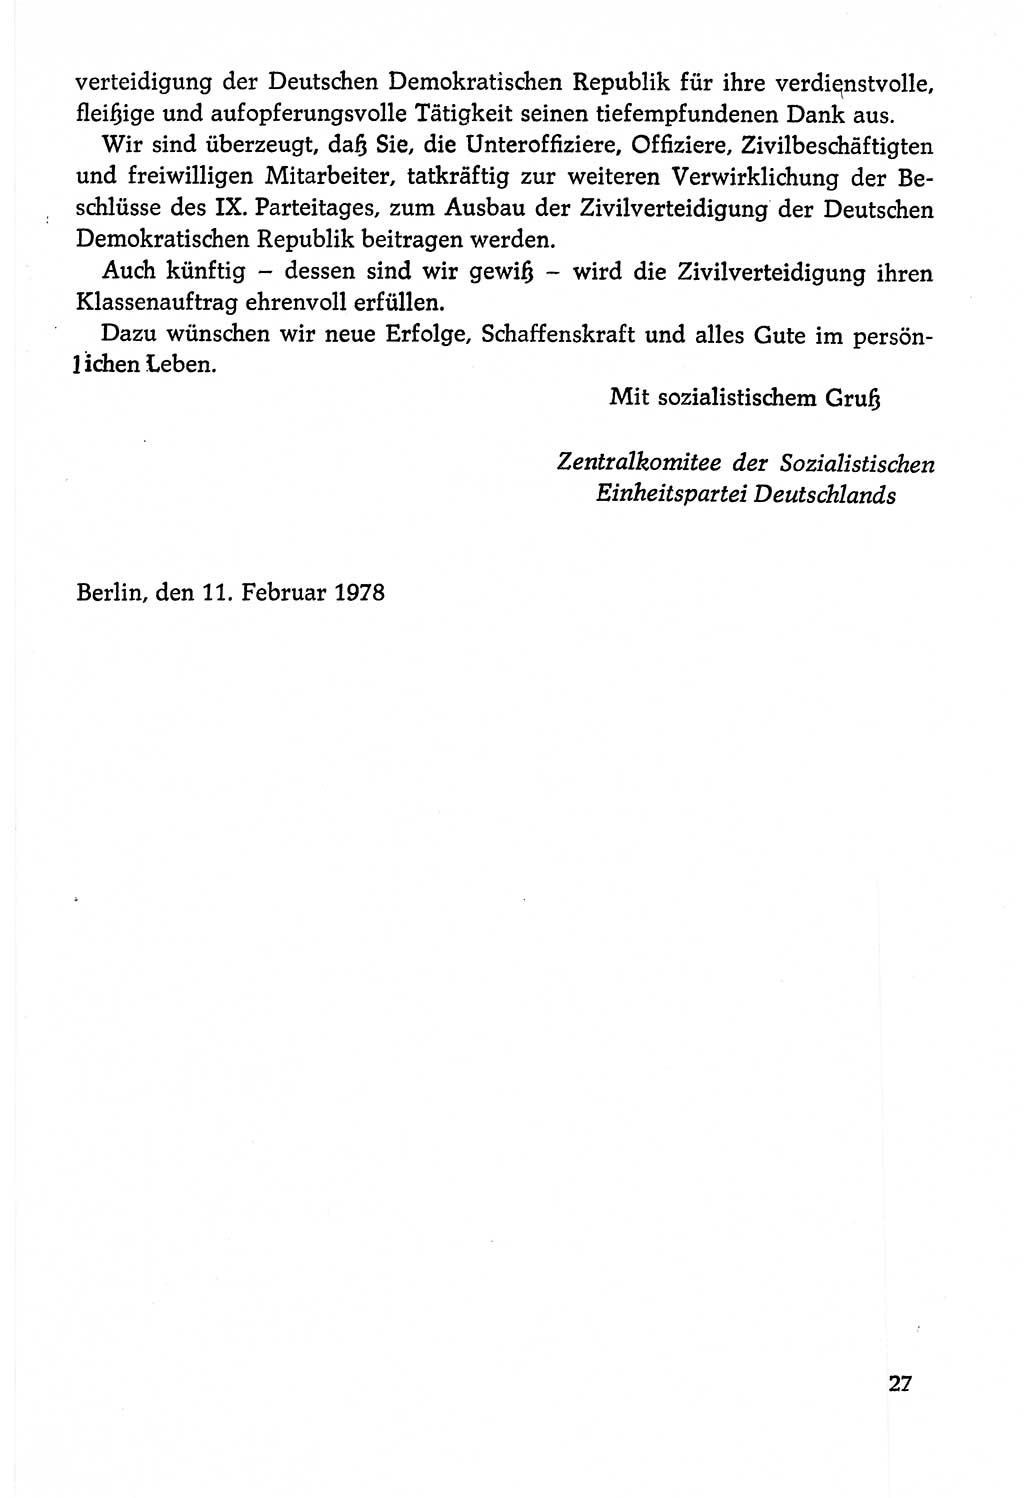 Dokumente der Sozialistischen Einheitspartei Deutschlands (SED) [Deutsche Demokratische Republik (DDR)] 1978-1979, Seite 27 (Dok. SED DDR 1978-1979, S. 27)